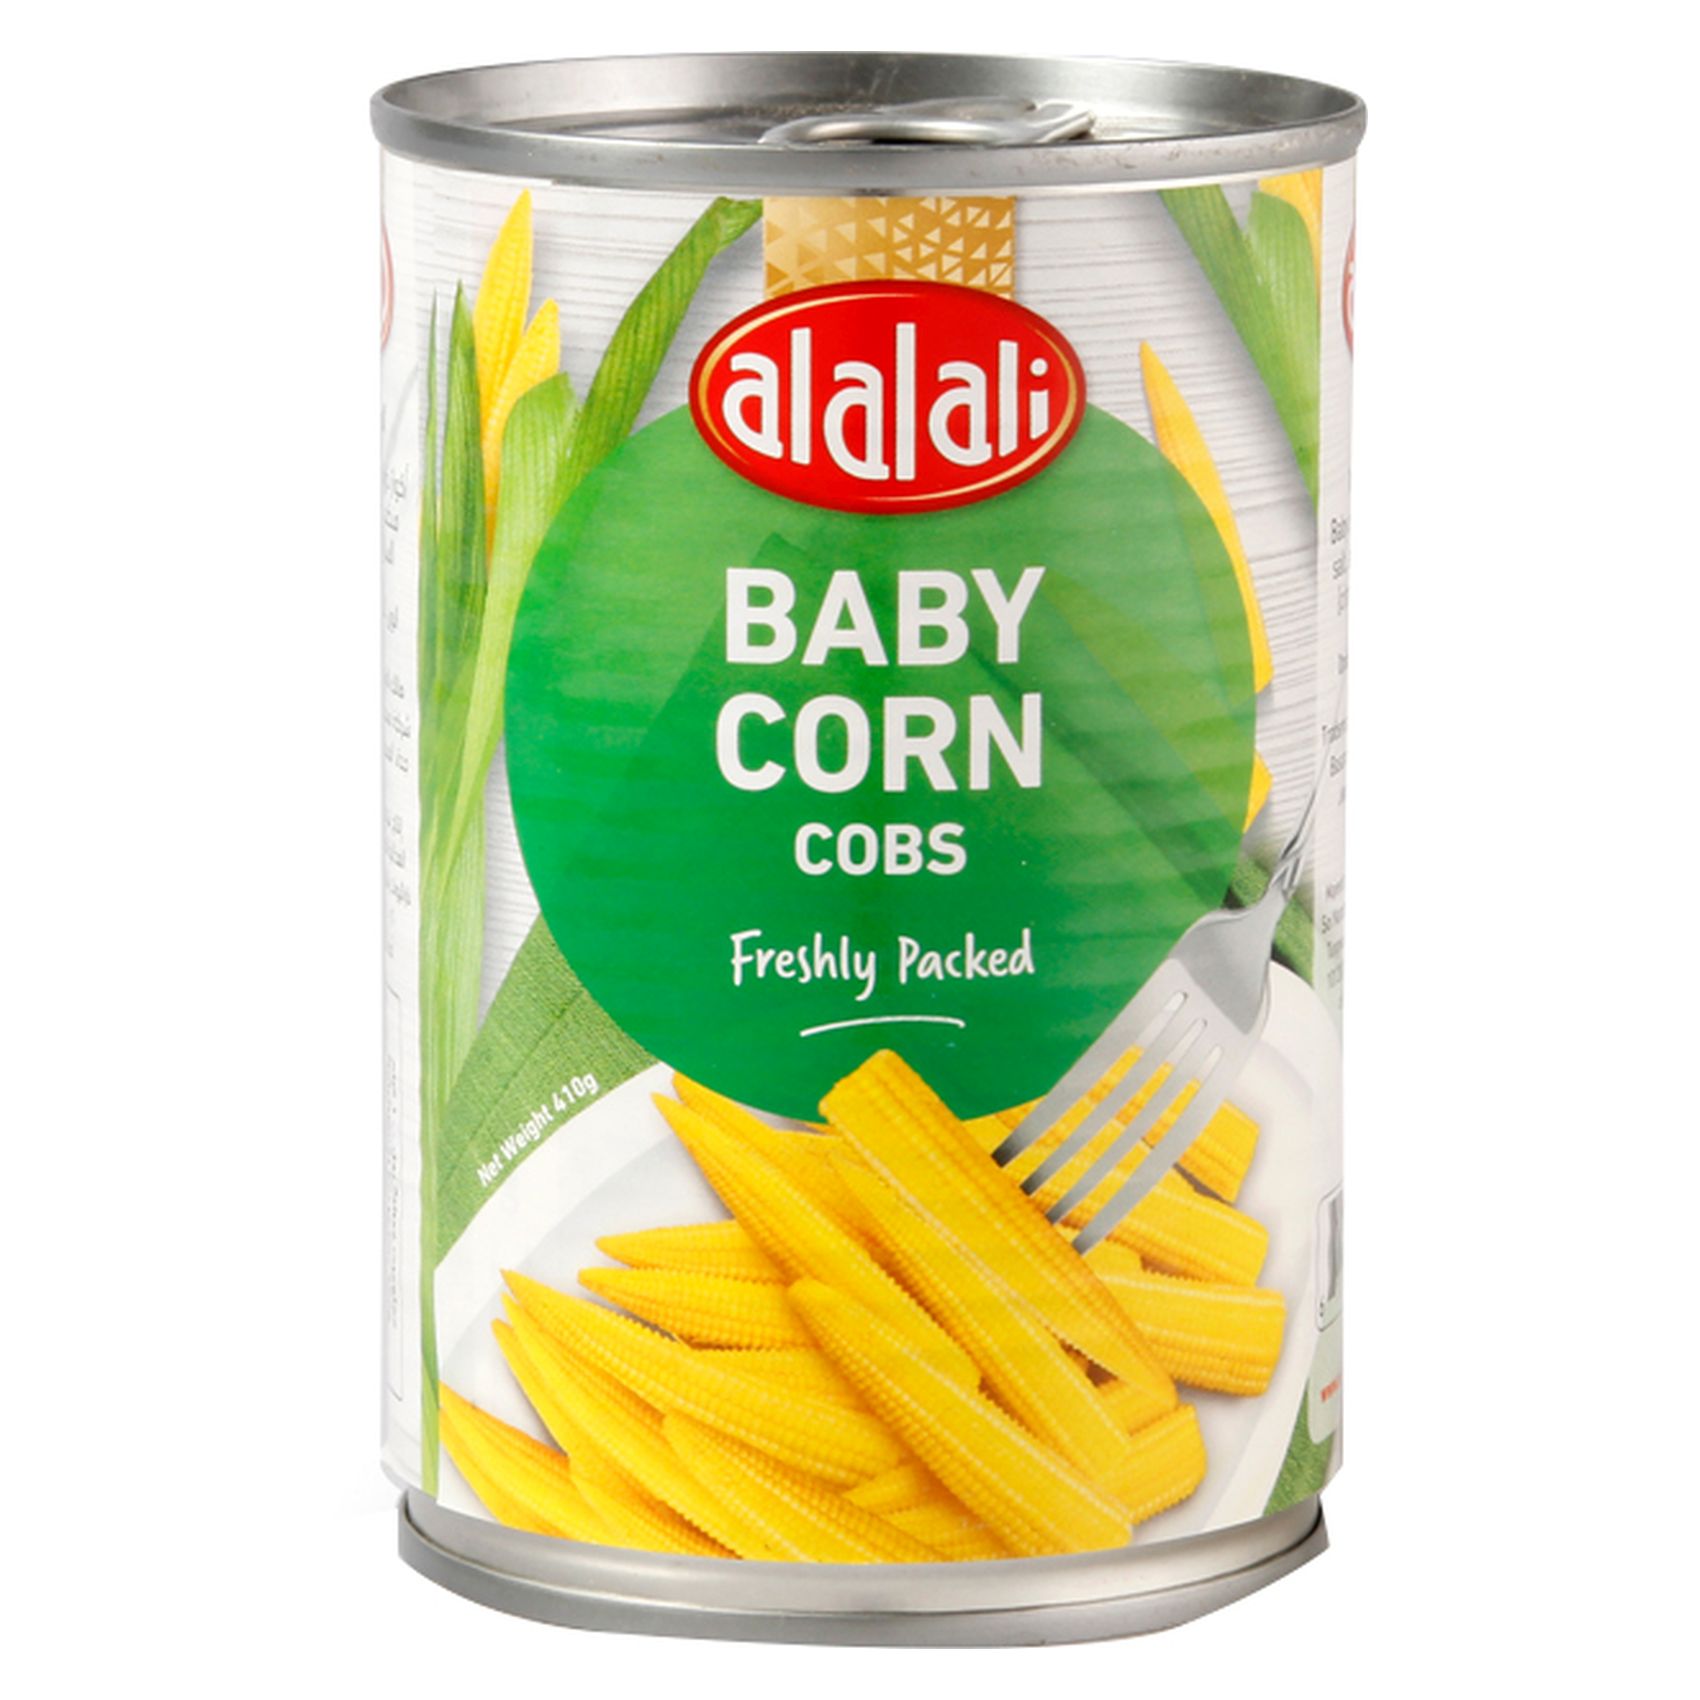 Al Alali Baby Corn Cobs 410g